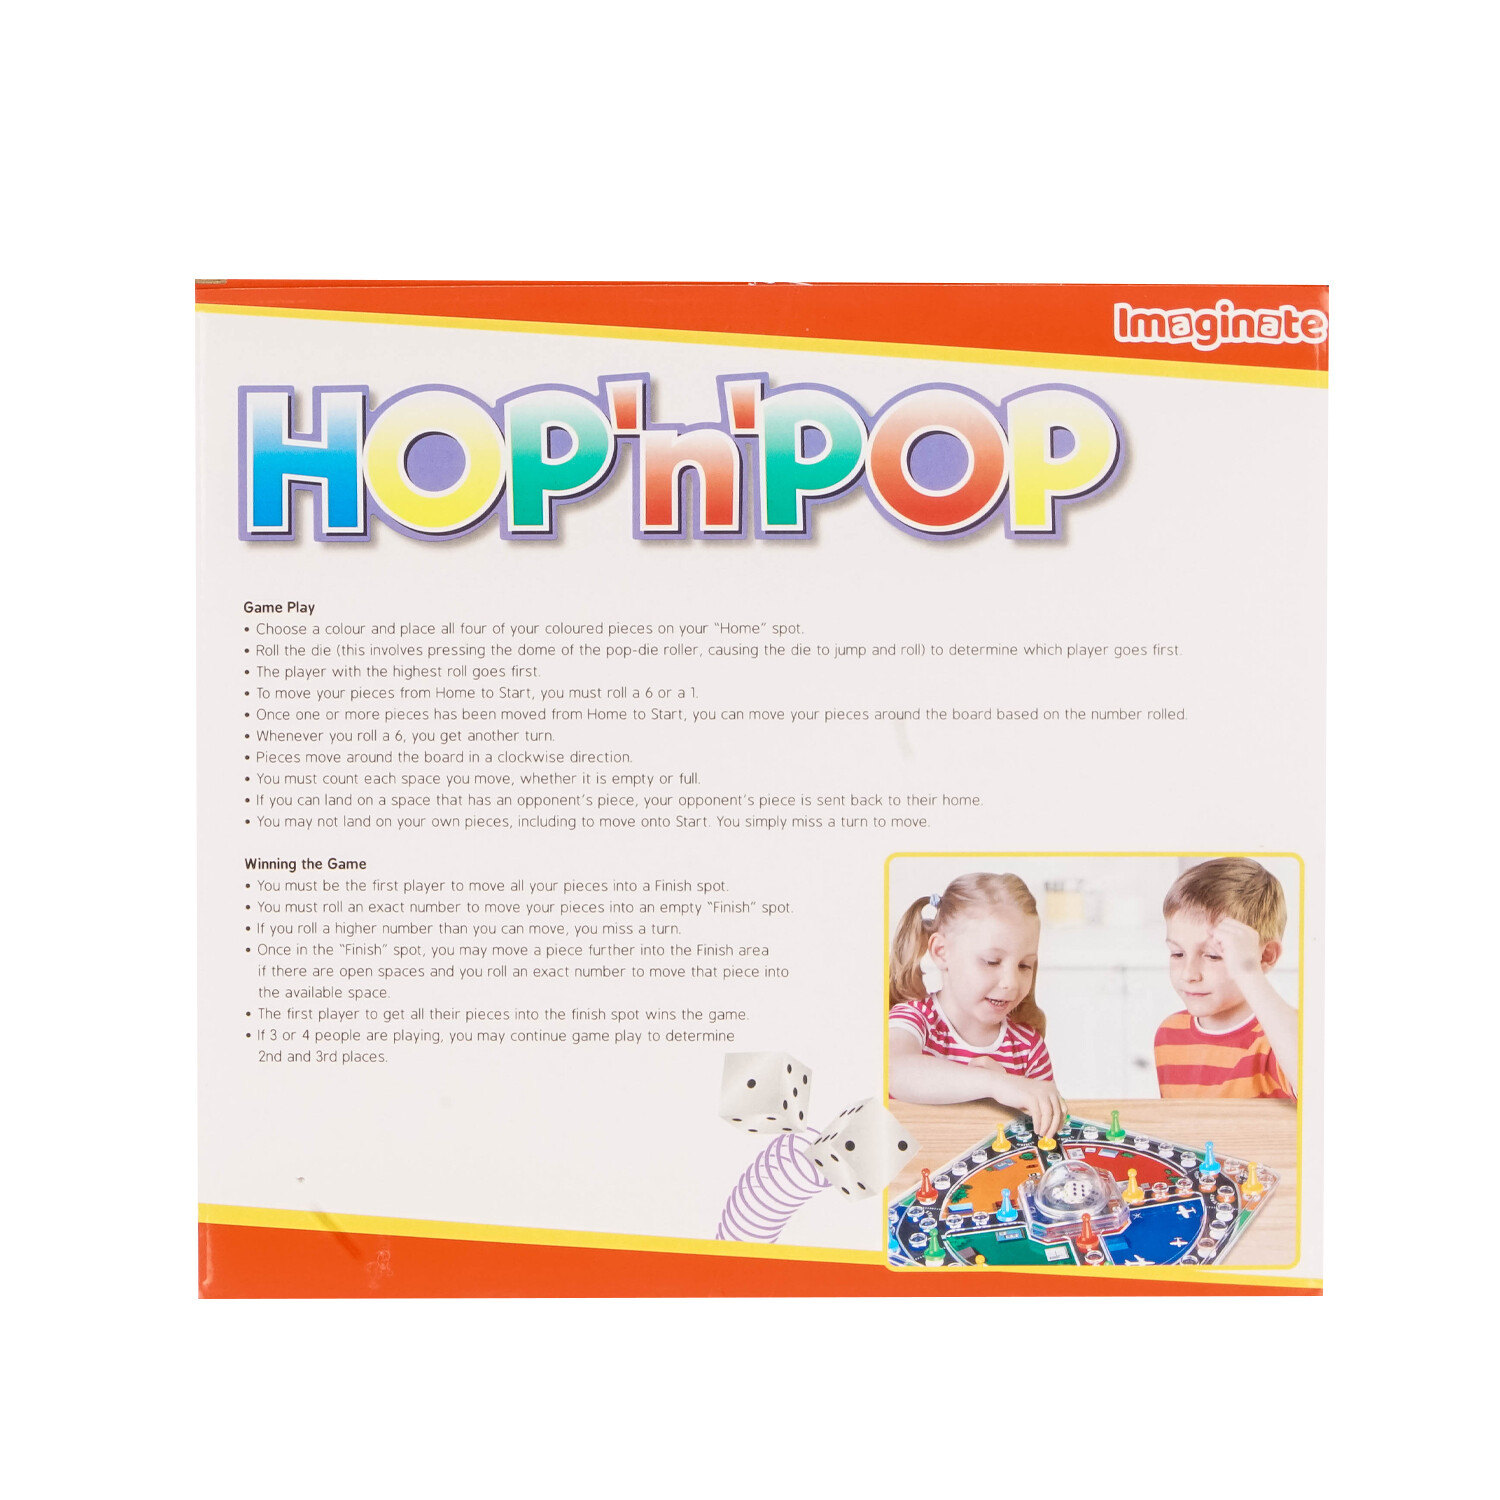 Hop 'n' Pop Image 2